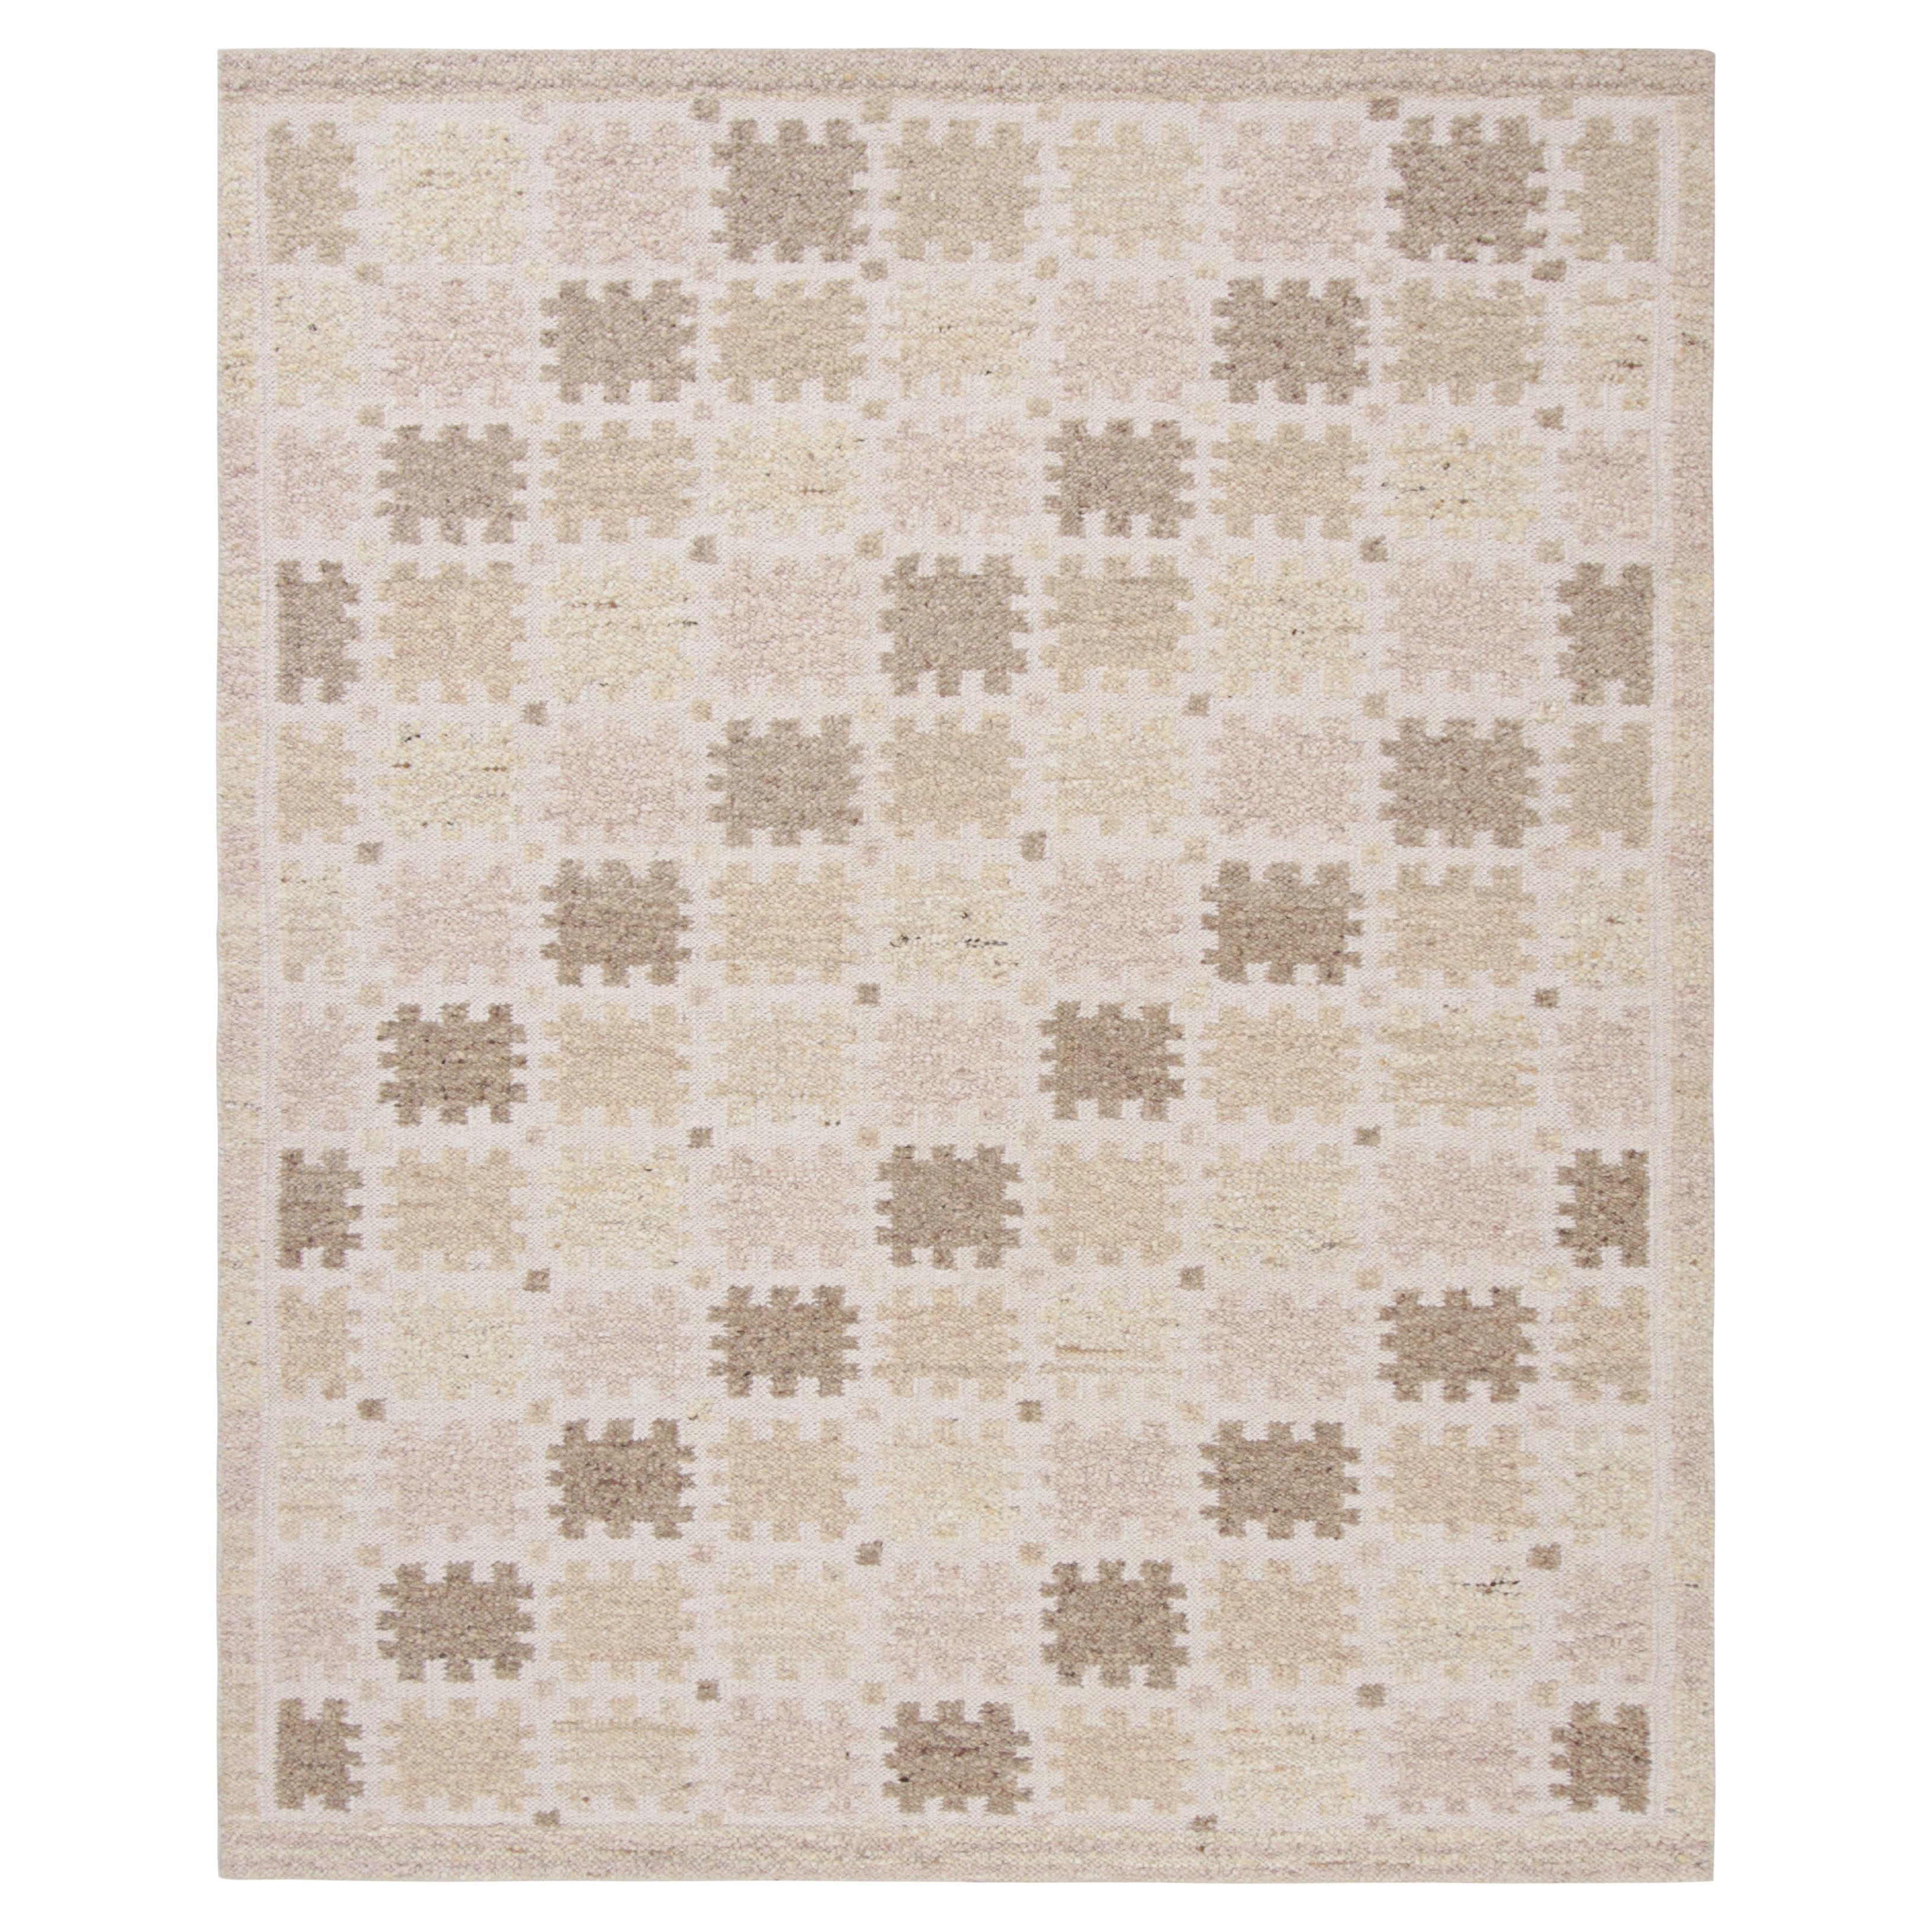 Rug & Kilim's Teppich im skandinavischen Stil mit beige-braunem, weißem geometrischem Muster